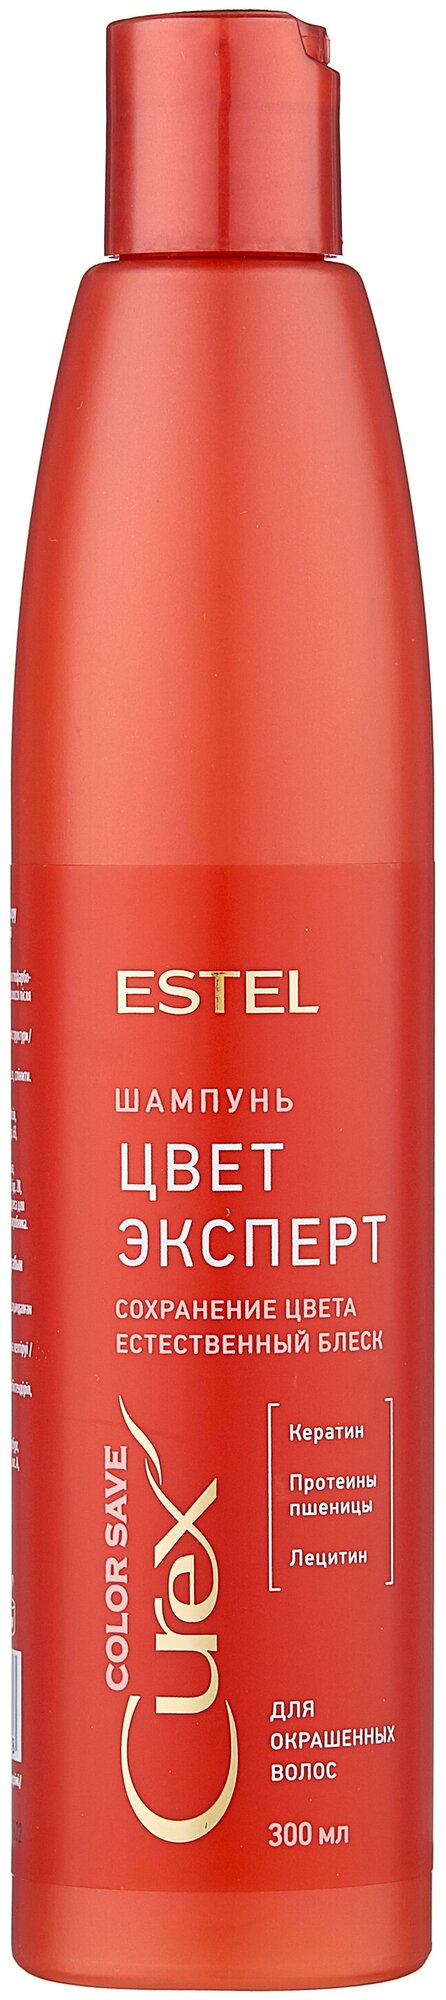 Шампунь ESTEL "Поддержания цвета" для окрашенных волос, 300 мл